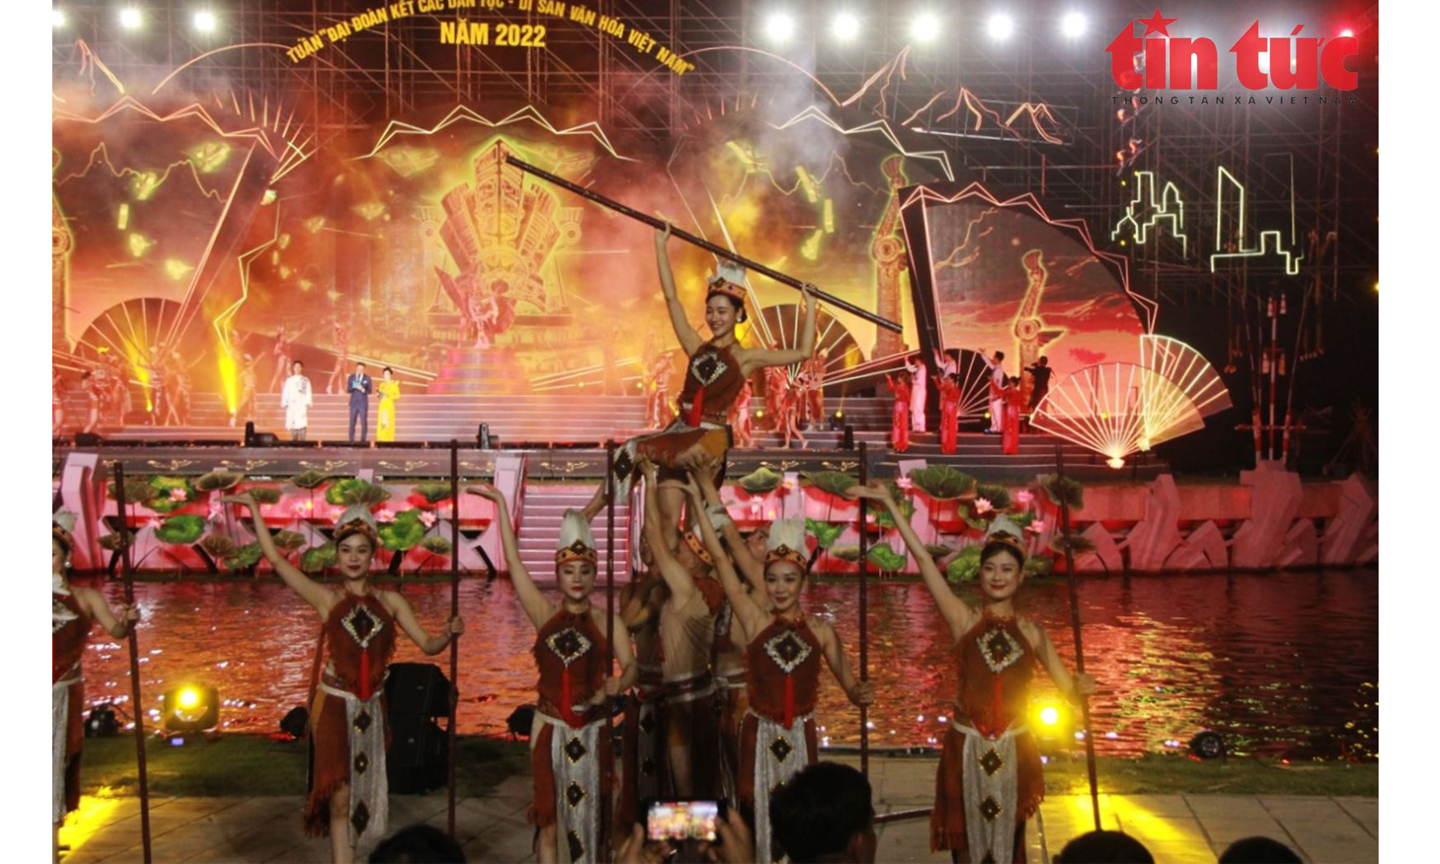 Tuần Đại đoàn kết các dân tộc - Di sản văn hóa Việt Nam, sẽ diễn ra từ ngày 18 - 23/11 tại Làng Văn hóa - Du lịch các dân tộc Việt Nam.